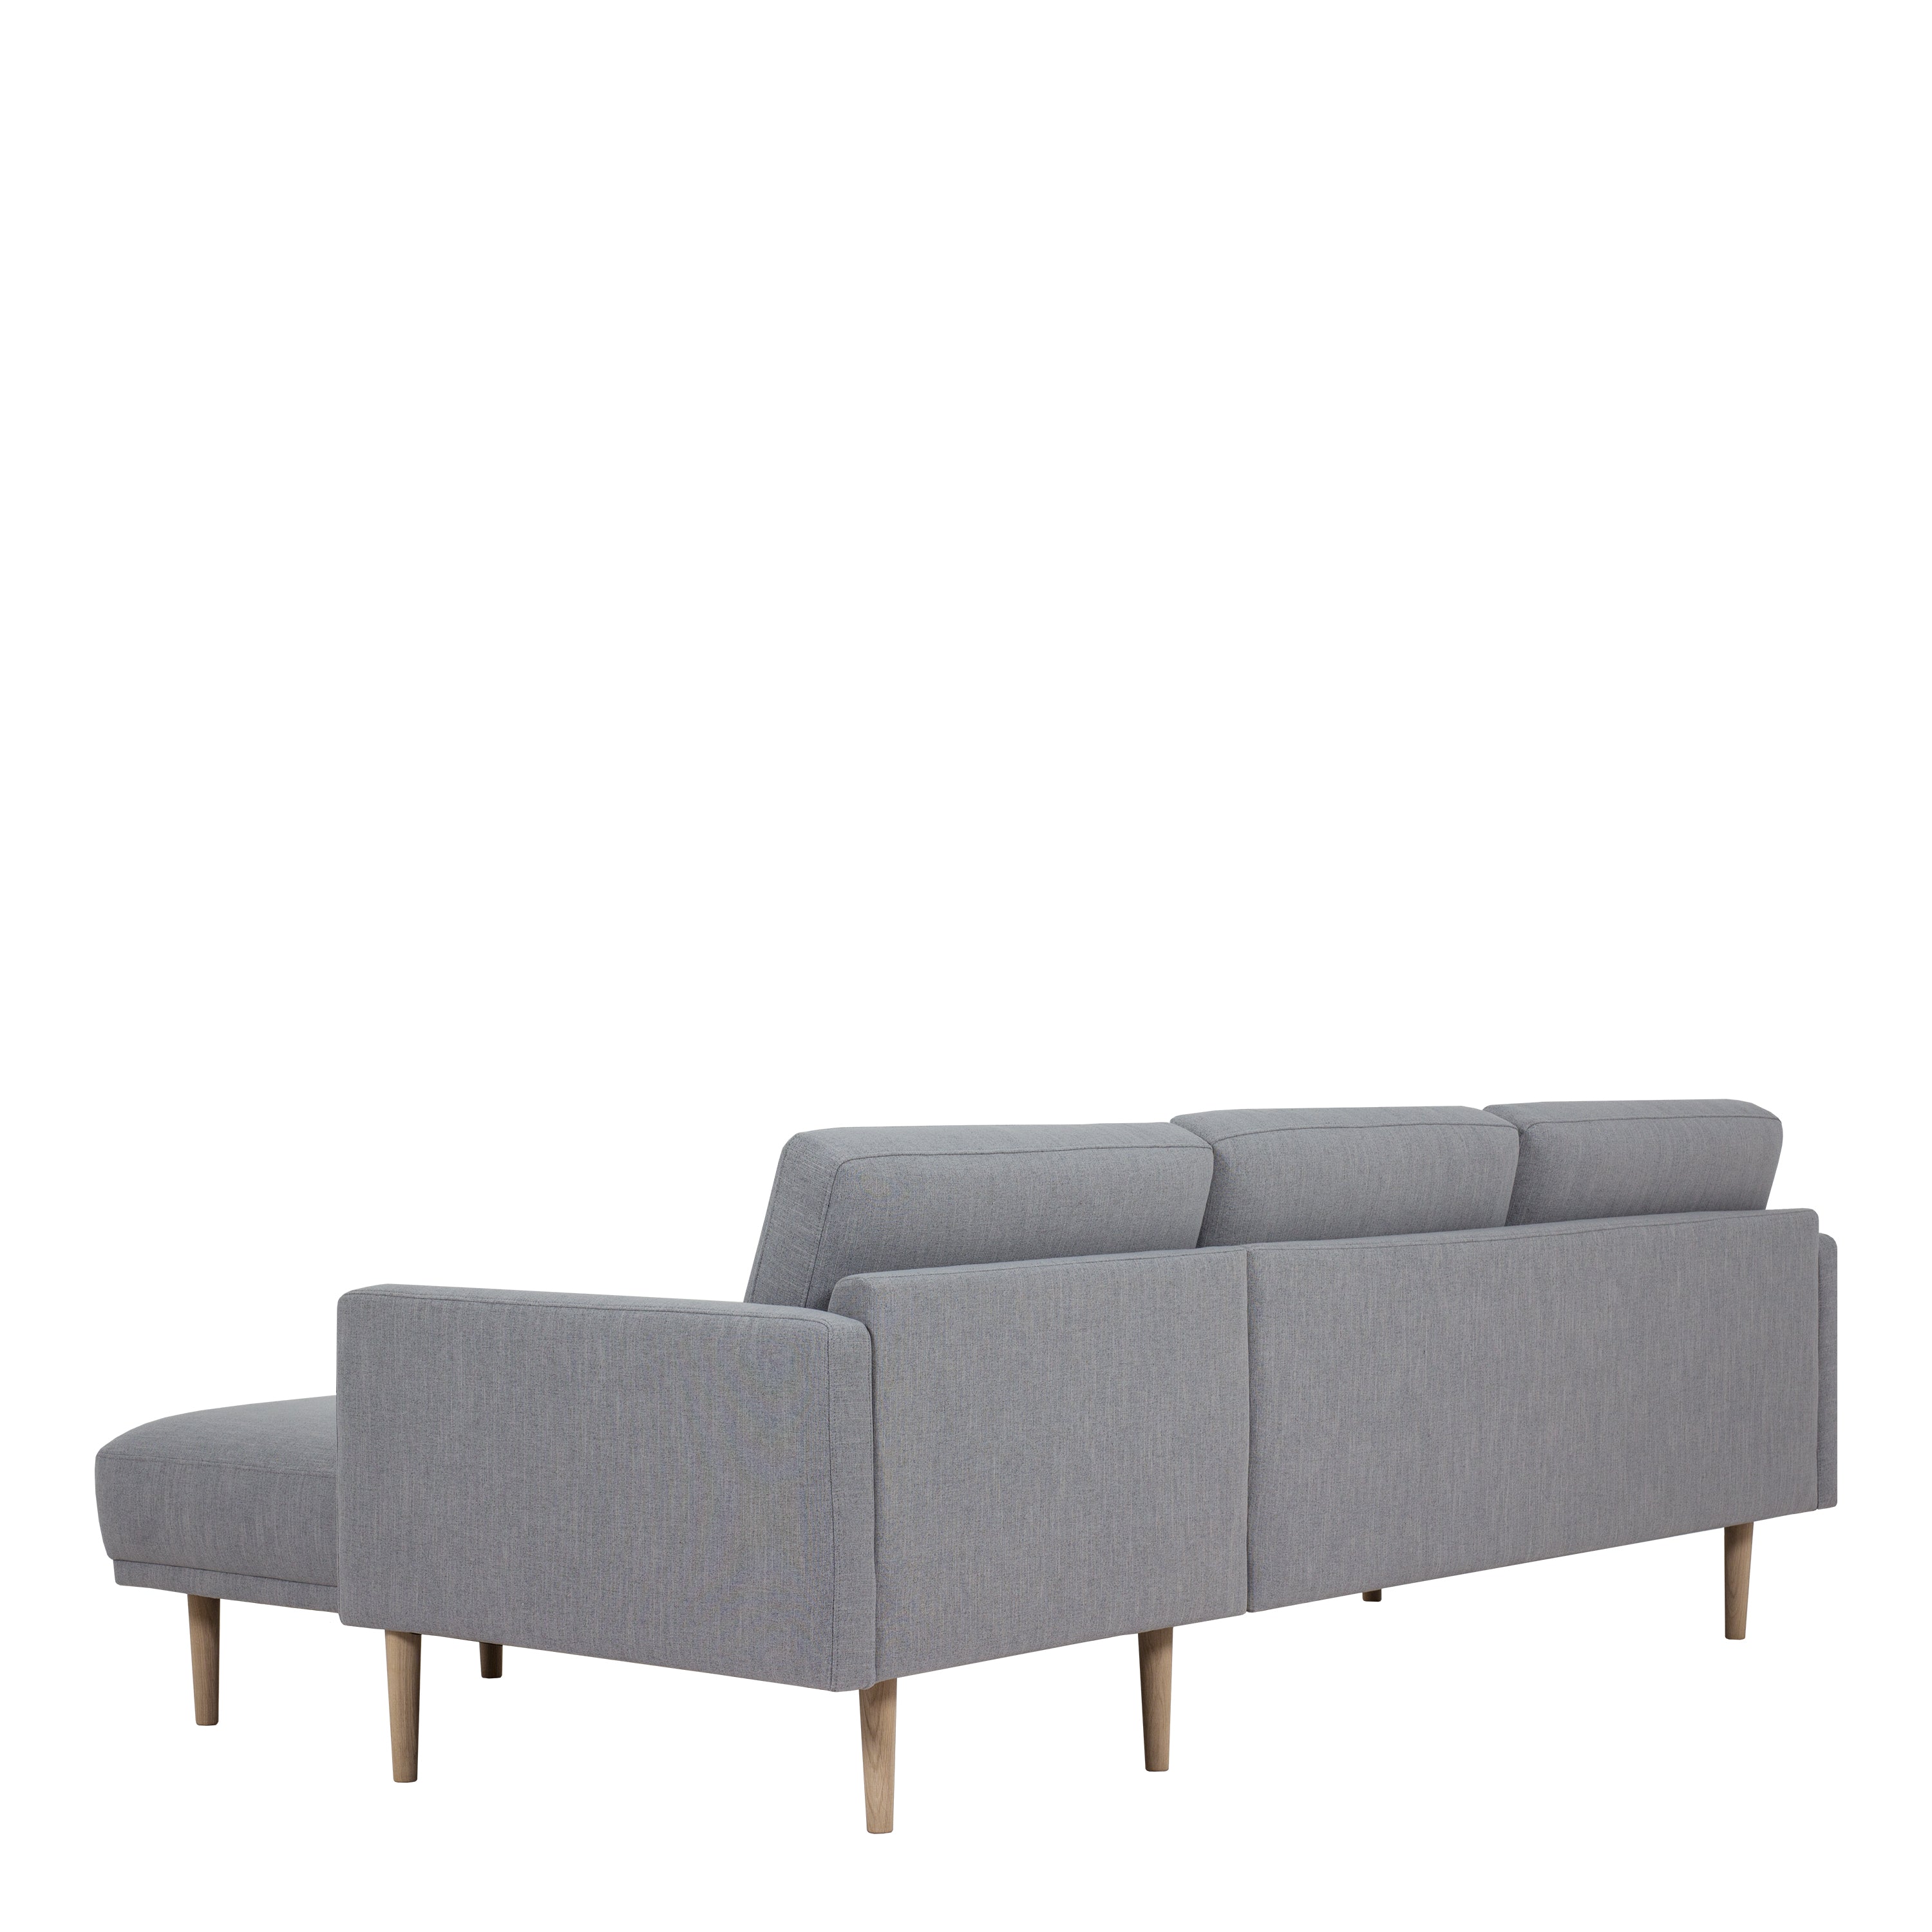 Larvik Chaiselongue Sofa (RH) - Grey, Oak Legs